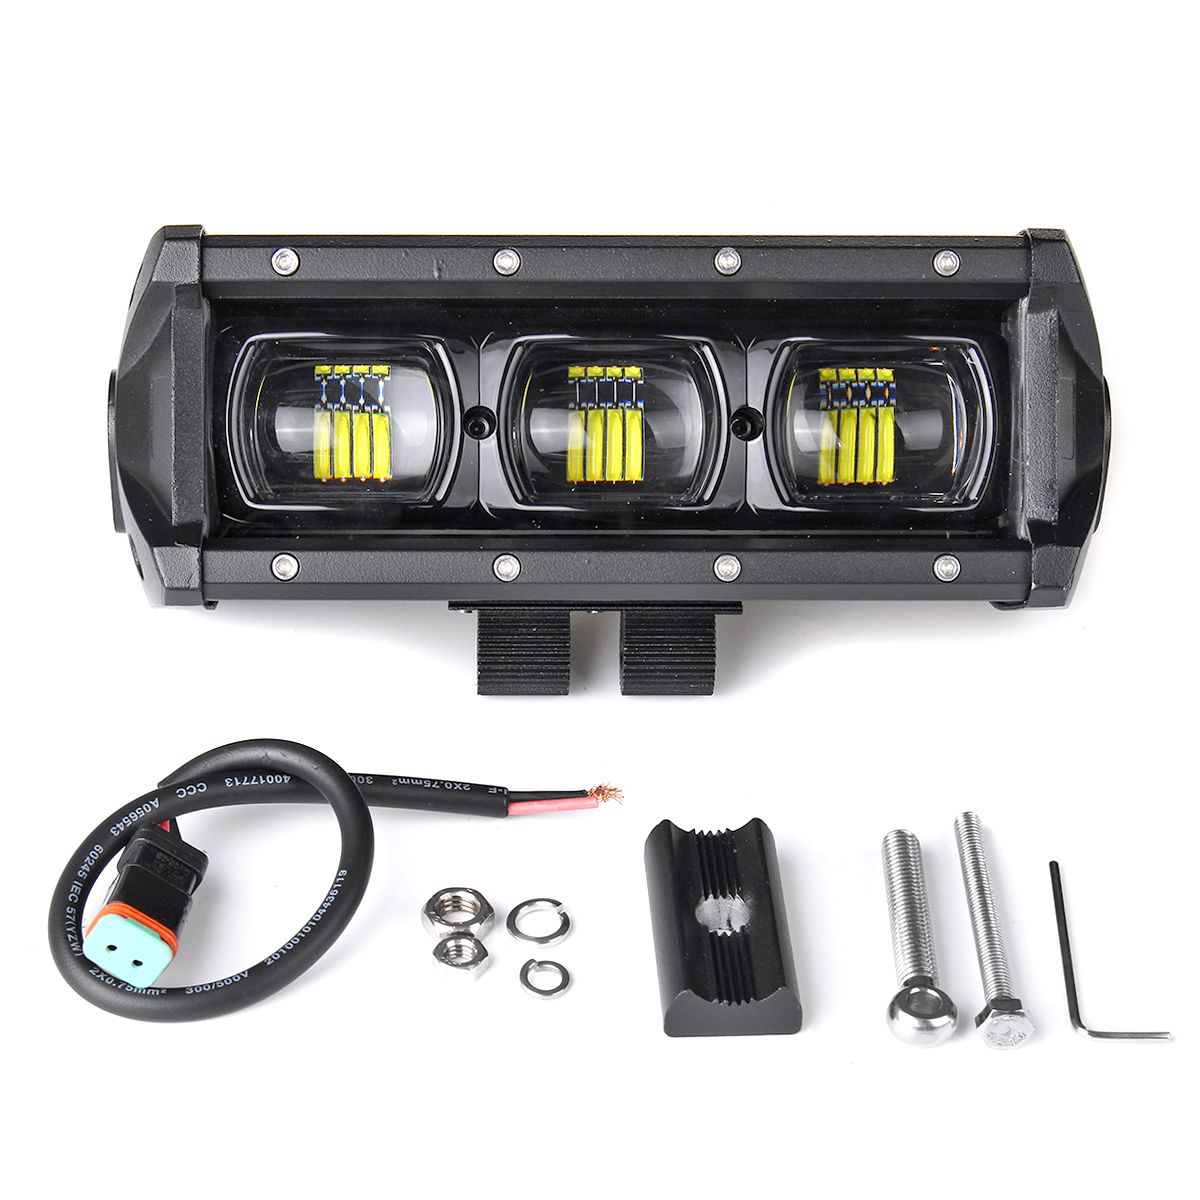 9-Inch-30W-LED-Work-Light-Bars-9D-Lens-Single-Row-6000K-9-32V-For-Off-Road-4WD-Trucks-SUV-ATV-Traile-1622048